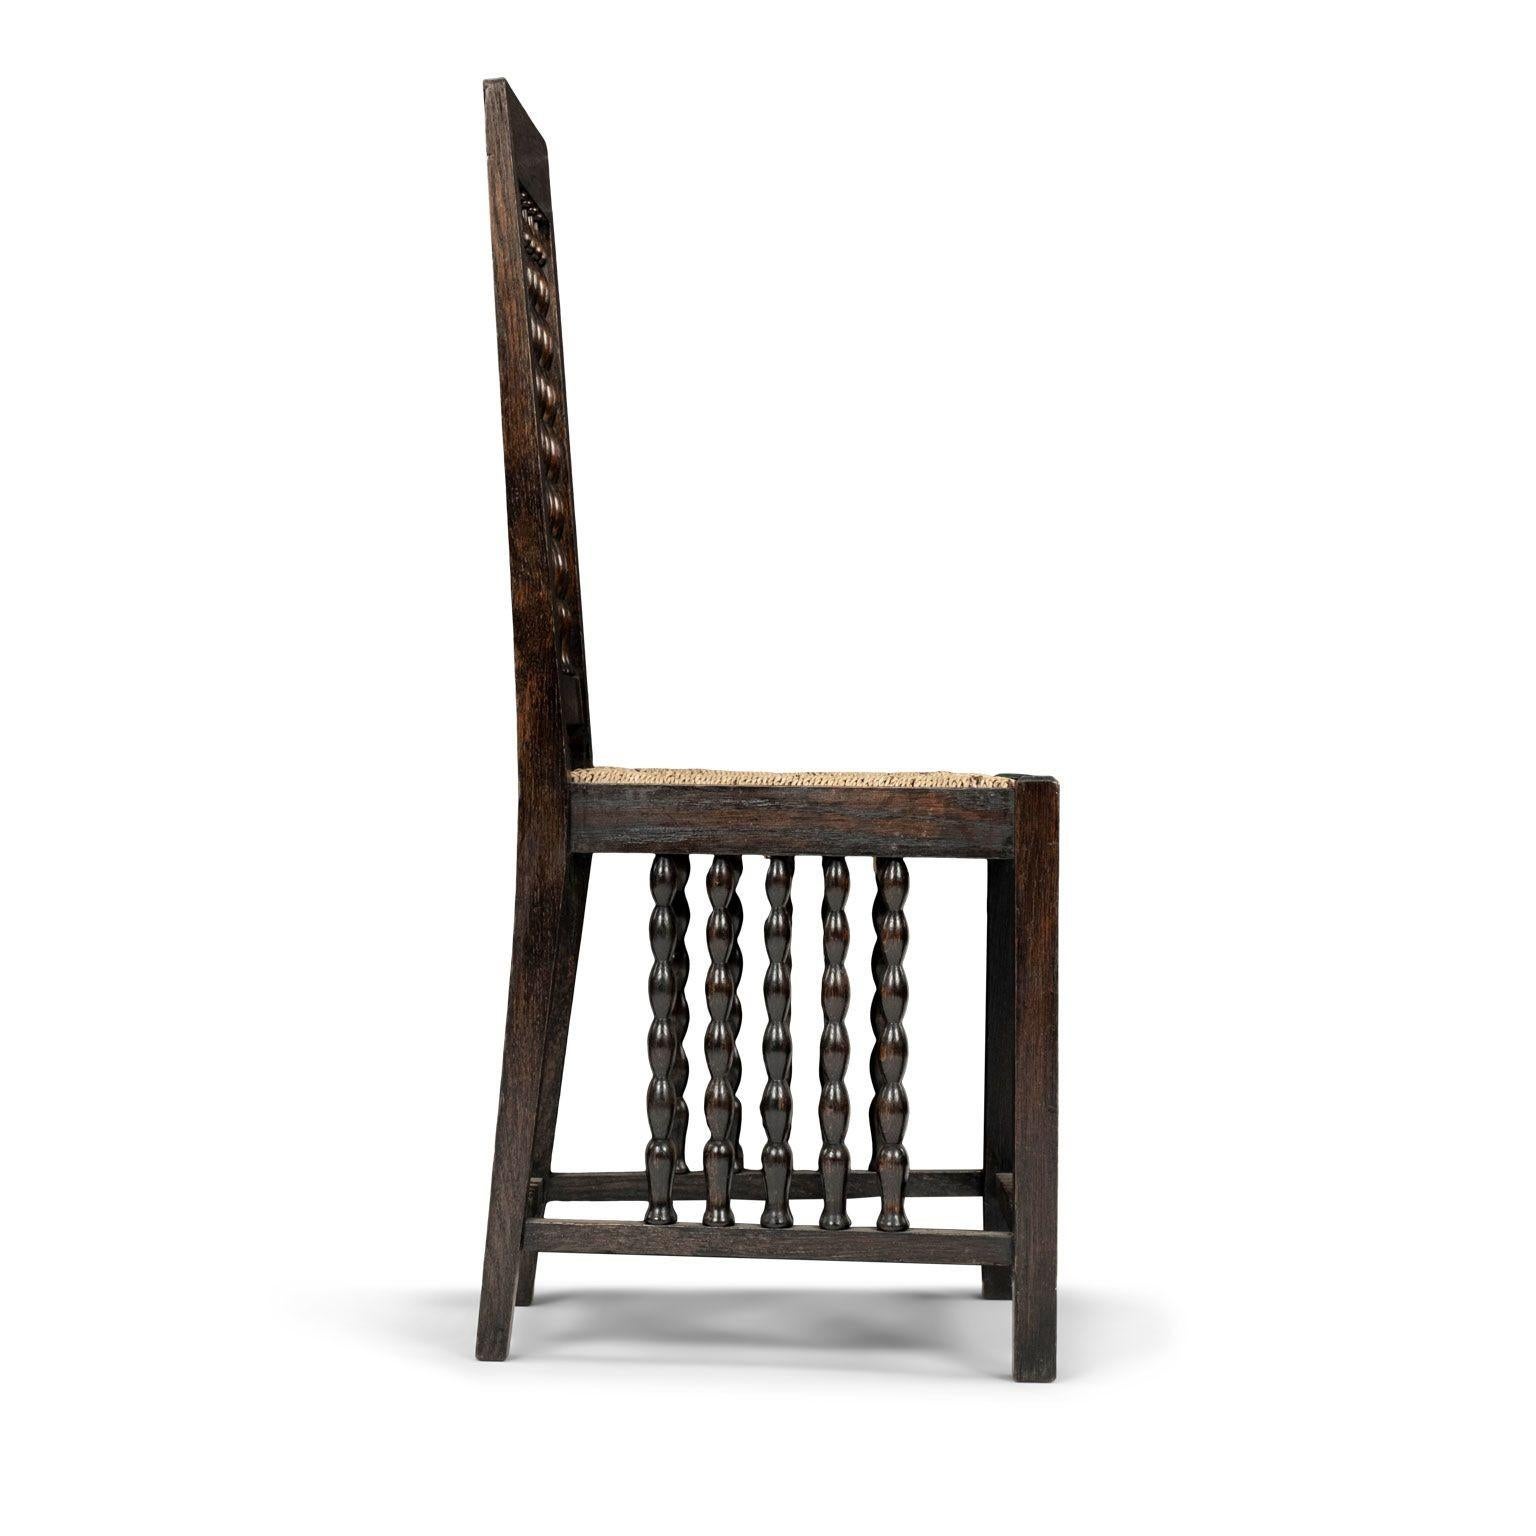 Frühmoderner Jugendstil-Beistellstuhl von Heinrich Vogeler, um 1910, Deutschland. Gestell aus geschwärztem Eichenholz, quadratische Beine (quadratische Hinterbeine verjüngen sich), eiliger trapezförmiger Sitz, durchbrochenes Perlenmotiv an der